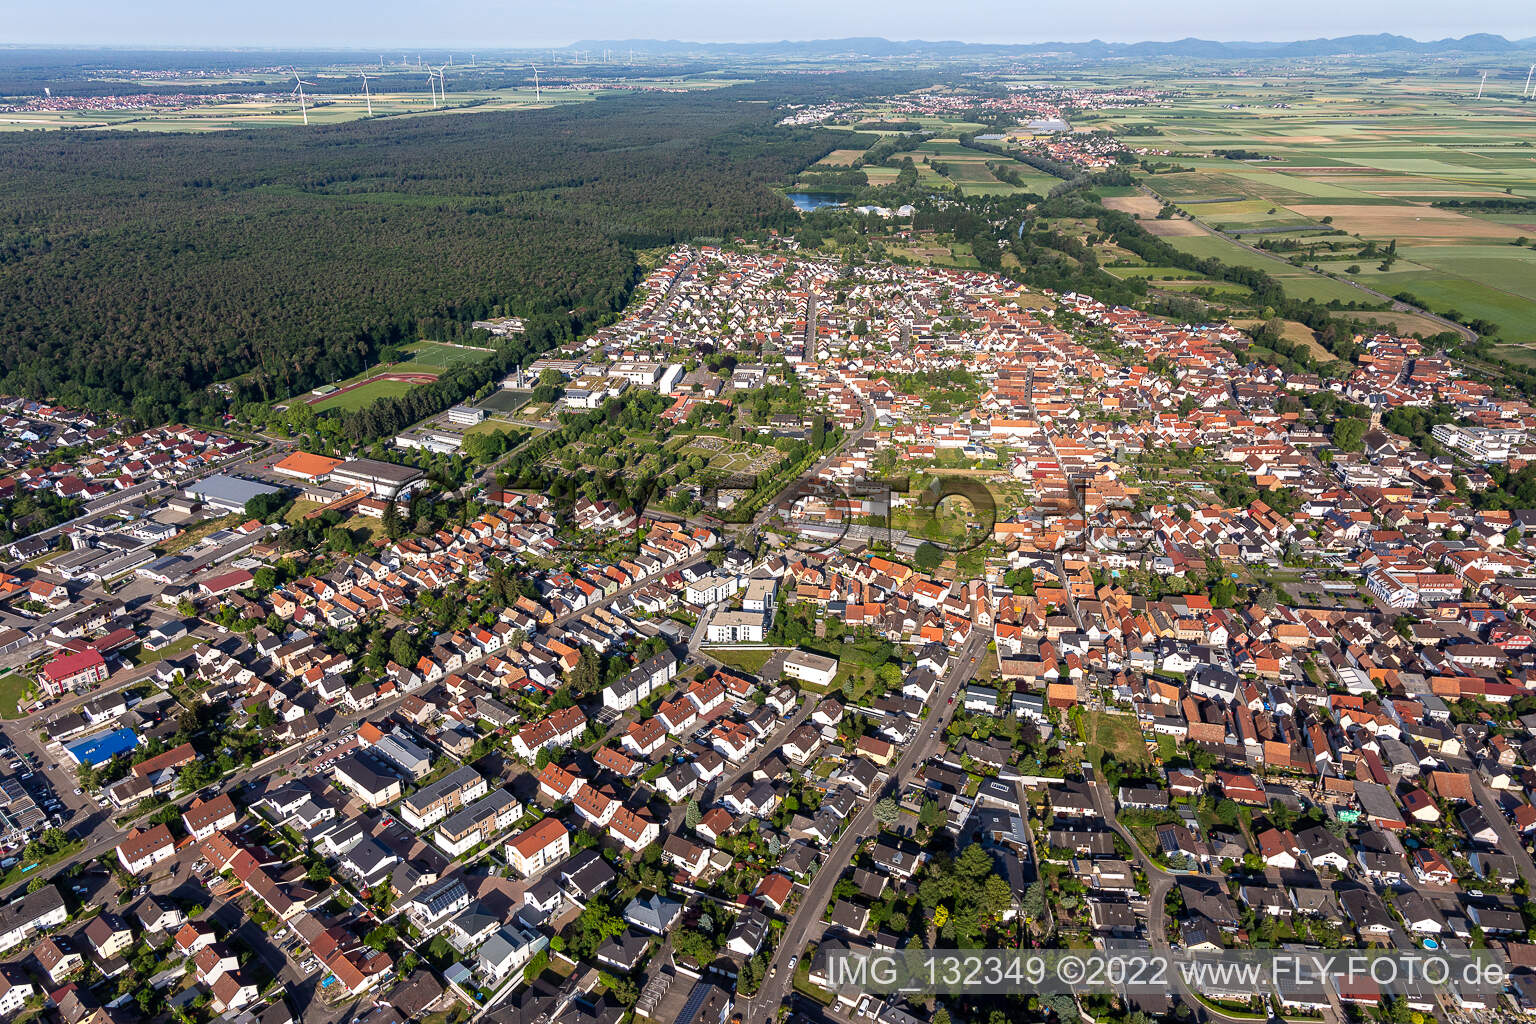 Rülzheim im Bundesland Rheinland-Pfalz, Deutschland aus der Drohnenperspektive